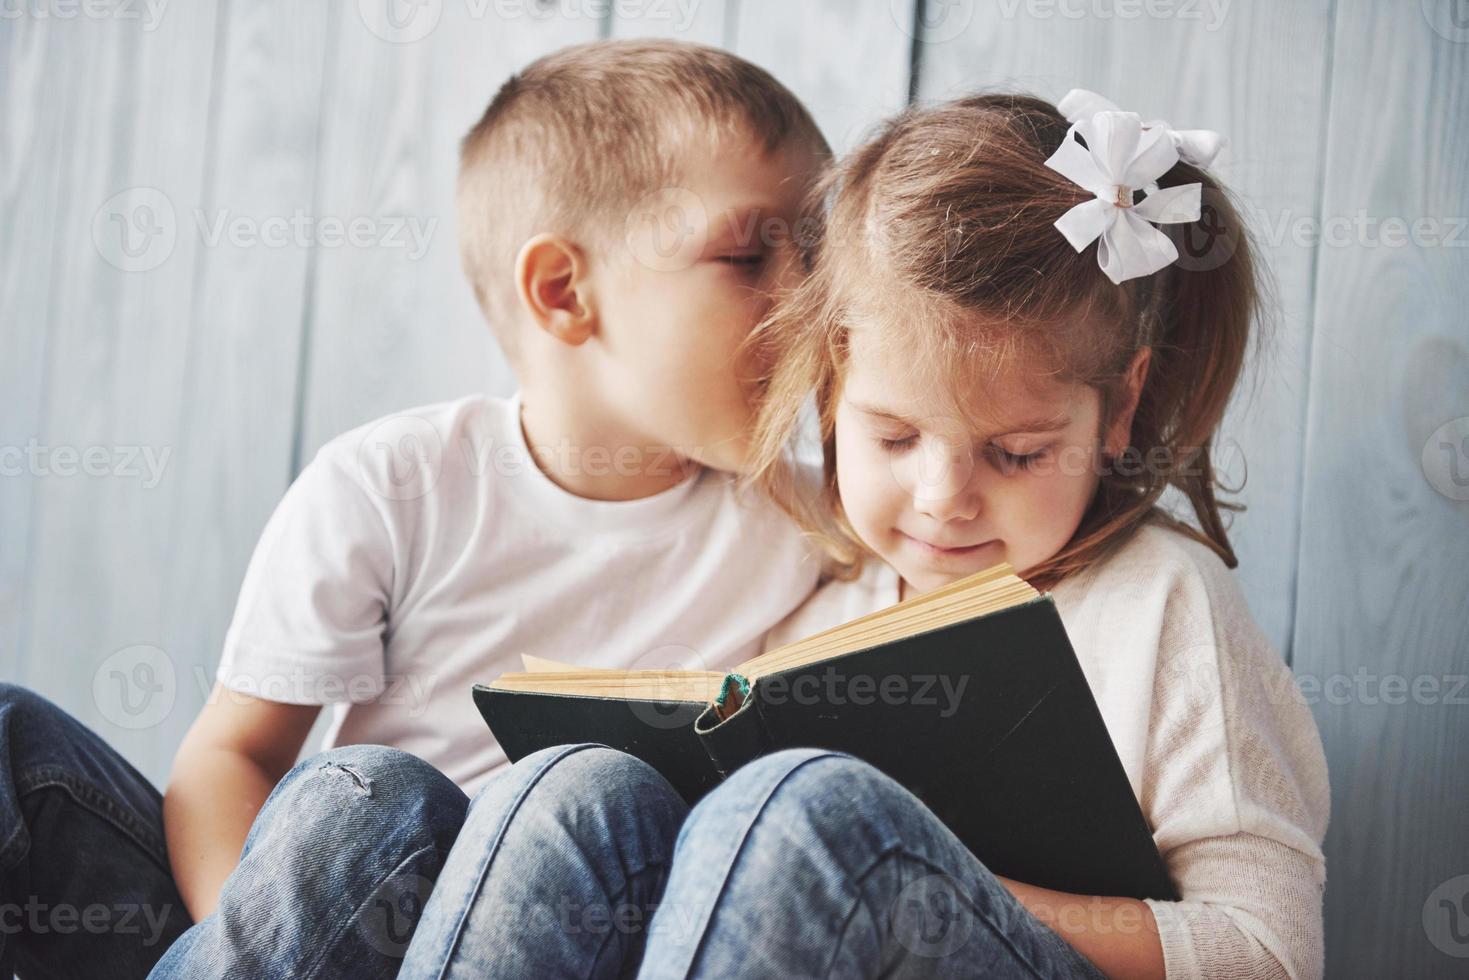 bereit für große Reisen. glückliches kleines Mädchen und Junge, die ein interessantes Buch lesen, das eine große Aktentasche trägt und lächelt. Reise-, Freiheits- und Vorstellungskonzept foto